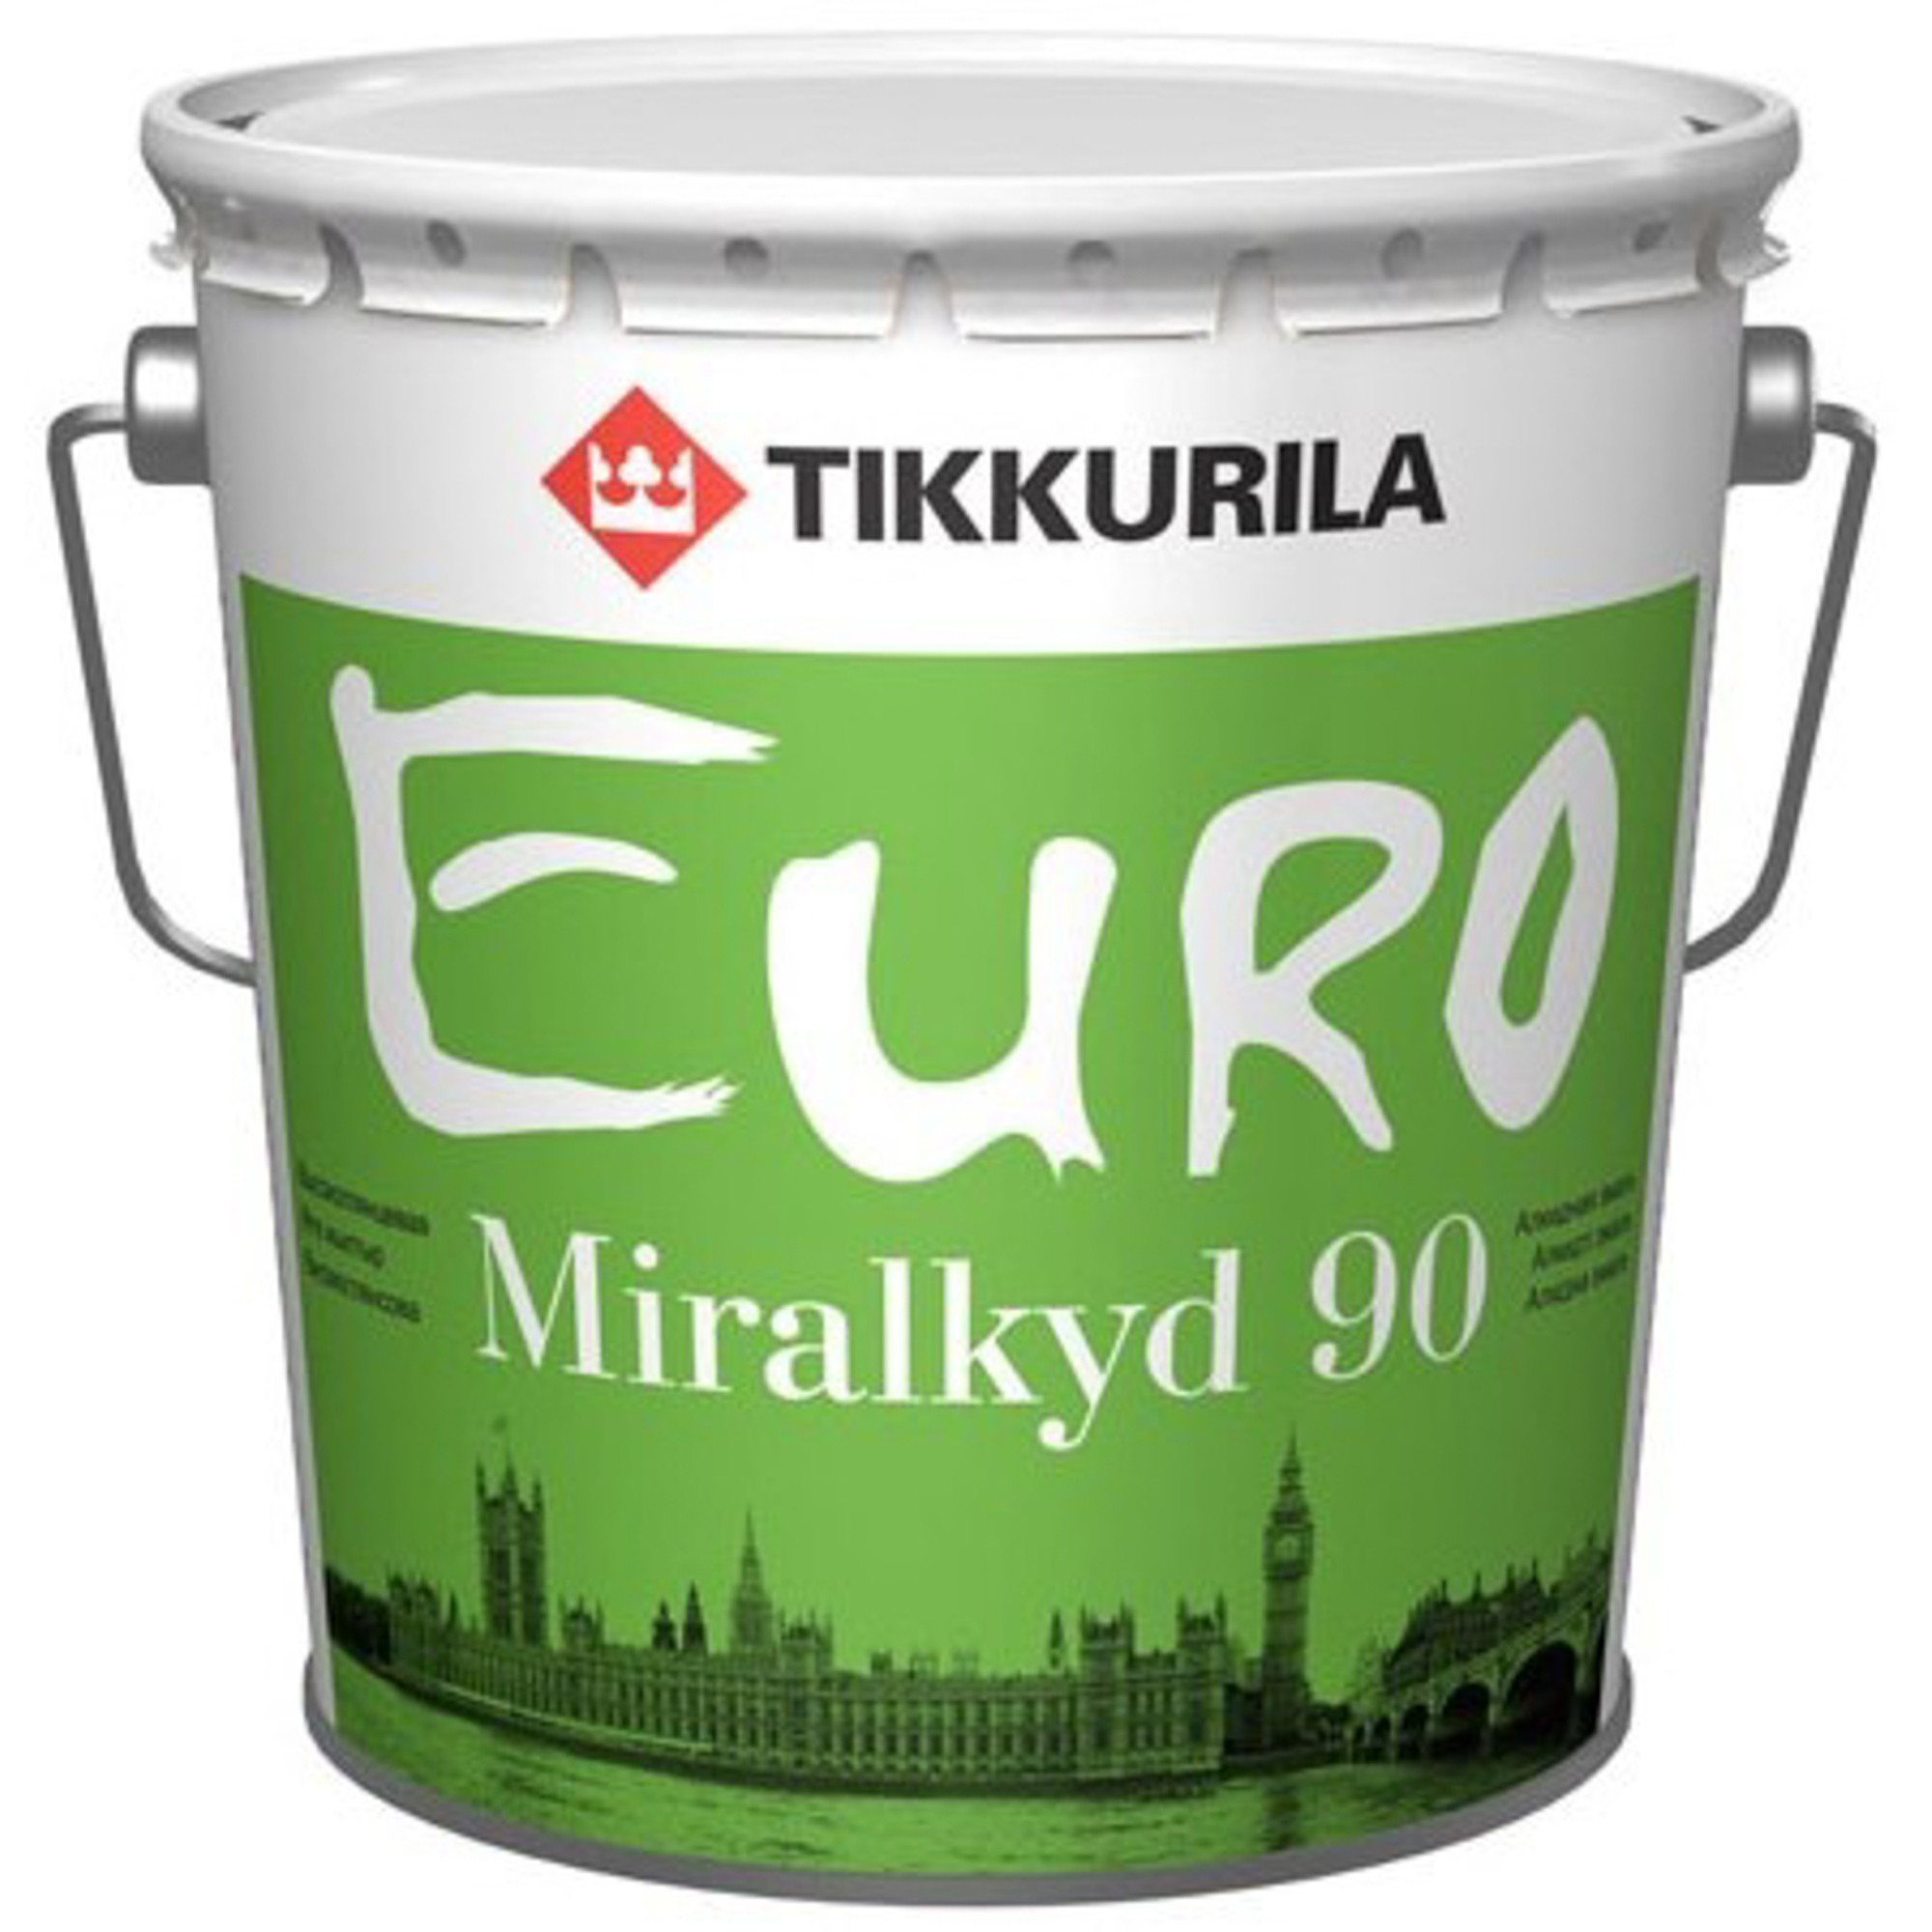 Где купить Эмаль алкидная высокоглянцевая Tikkurila Euro Miralkyd 90 база с 2.7л Tikkurila 